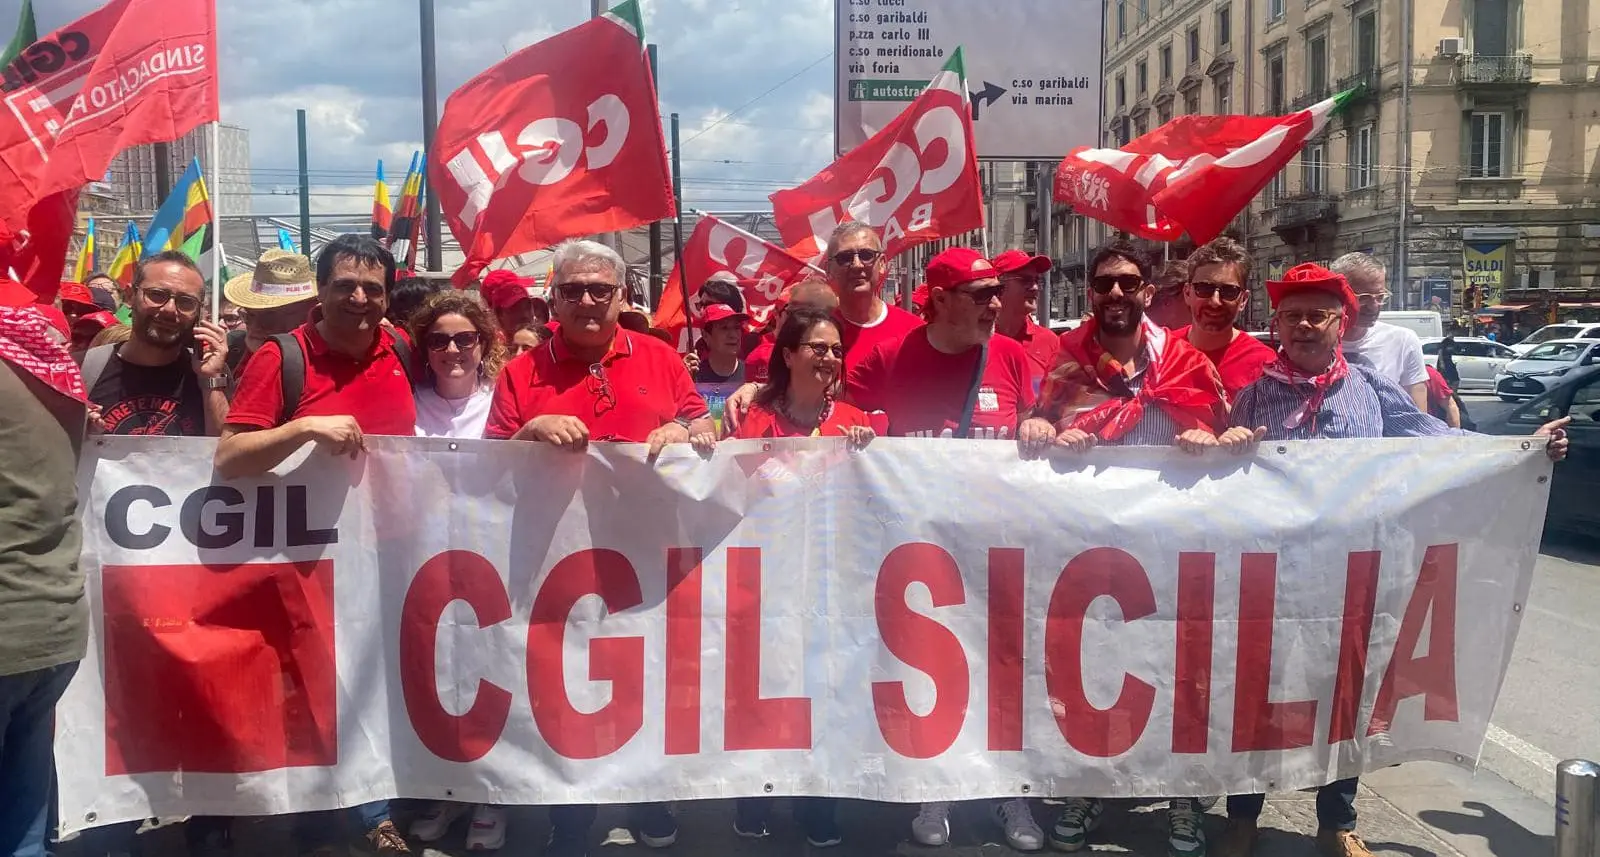 Europee: Cgil Sicilia, appello-manifesto: “Pnrr per Isole”